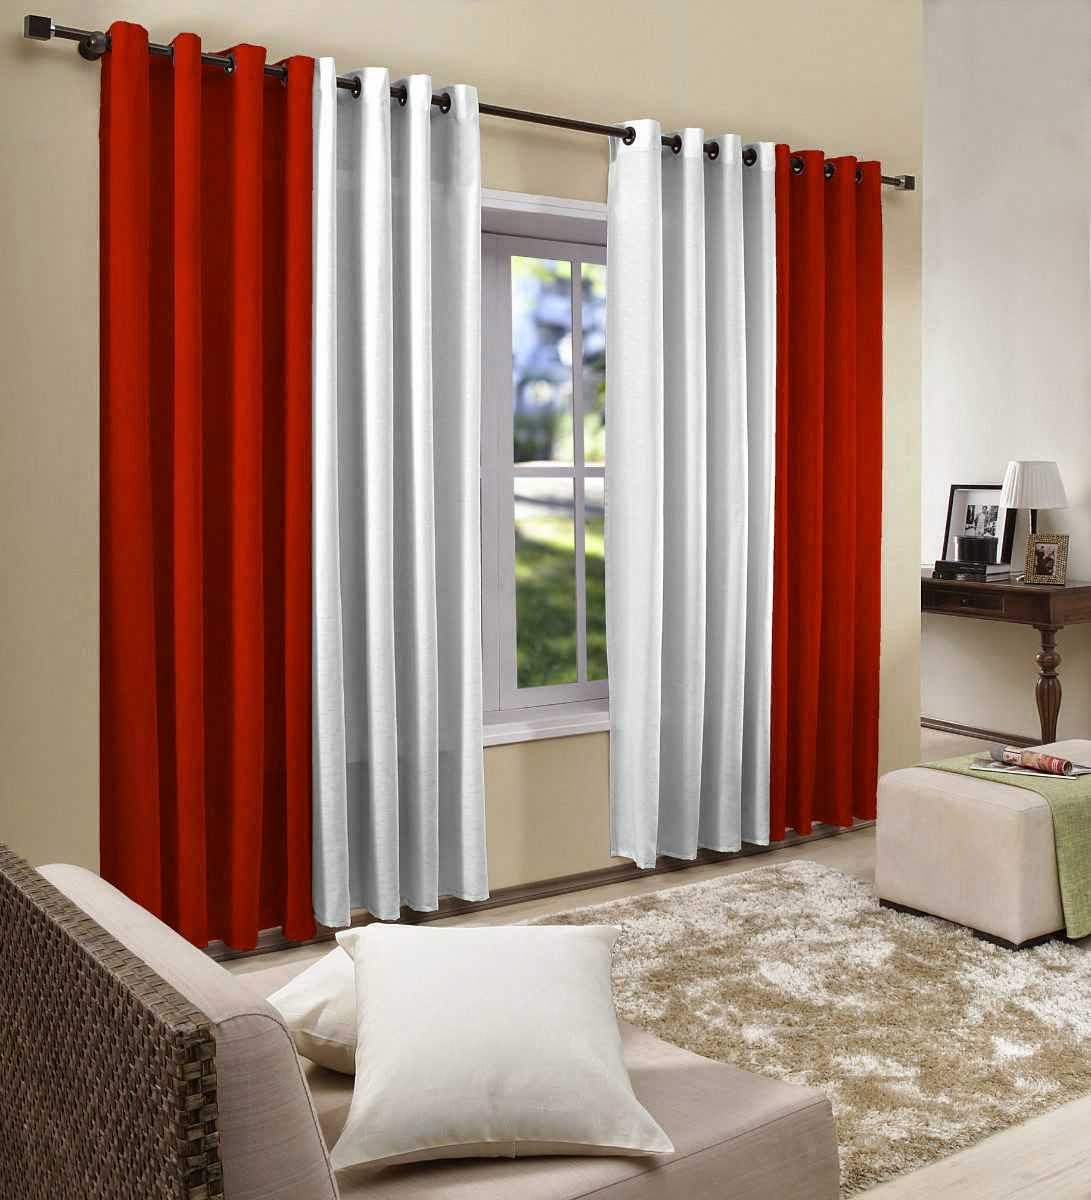 Rèm vải phối màu đỏ trắng cho phòng khách sinh động